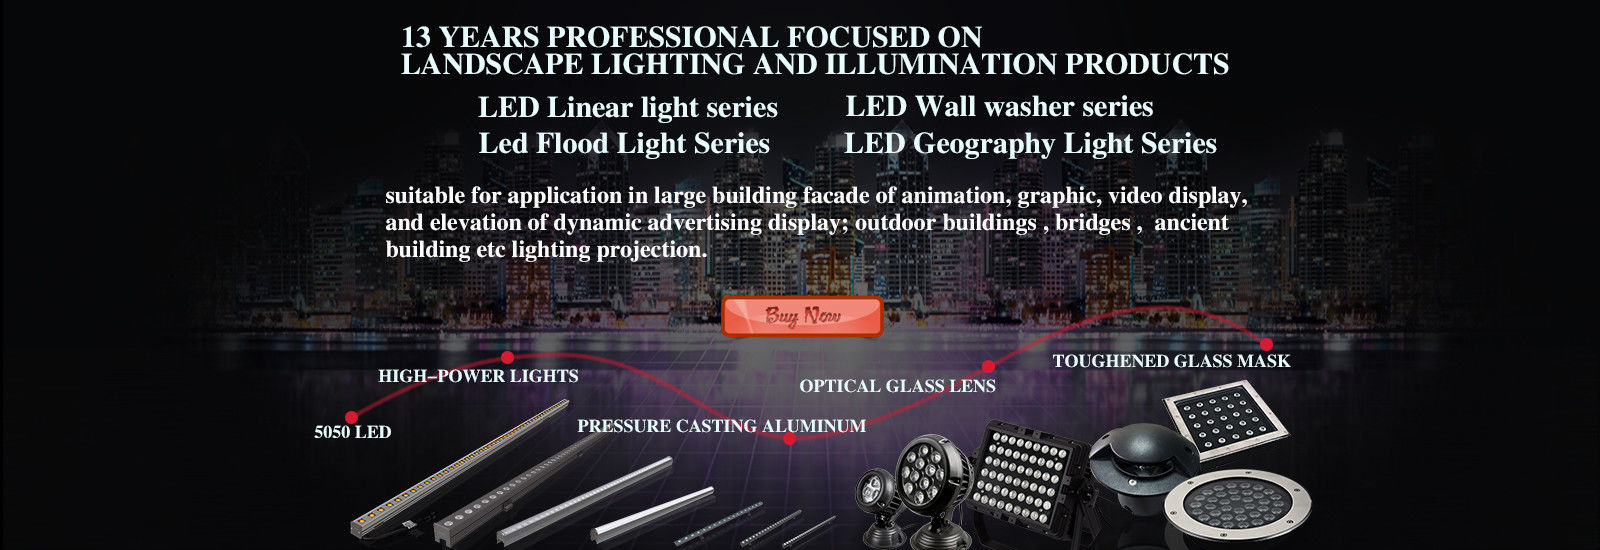 qualité Lumière LED de Pixel usine